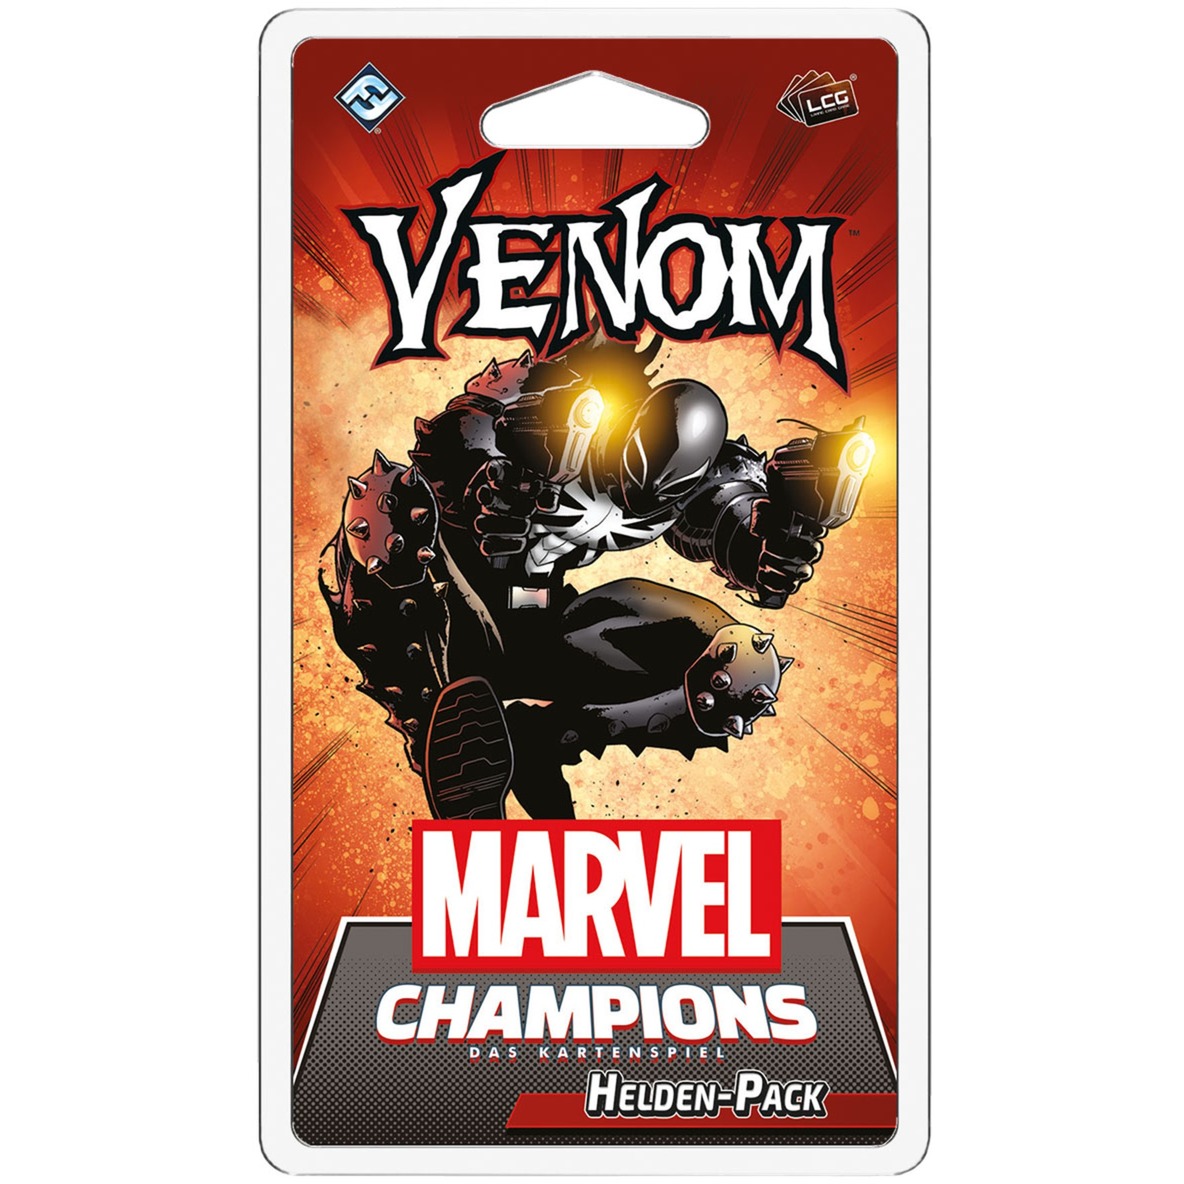 Marvel Champions: Das Kartenspiel - Venom von Asmodee